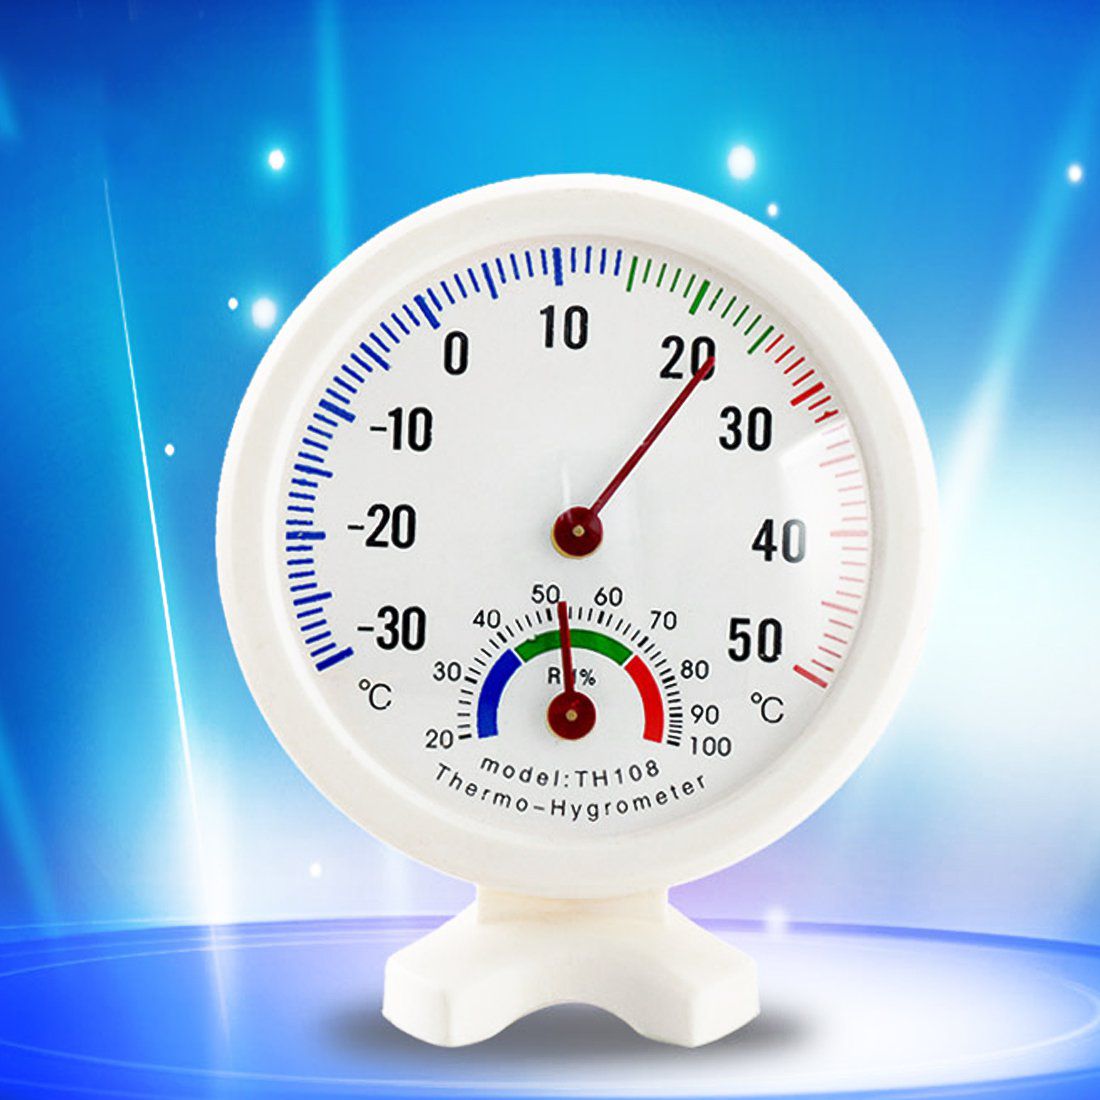 température et hygrométrie ( humidité) Code OMC 027